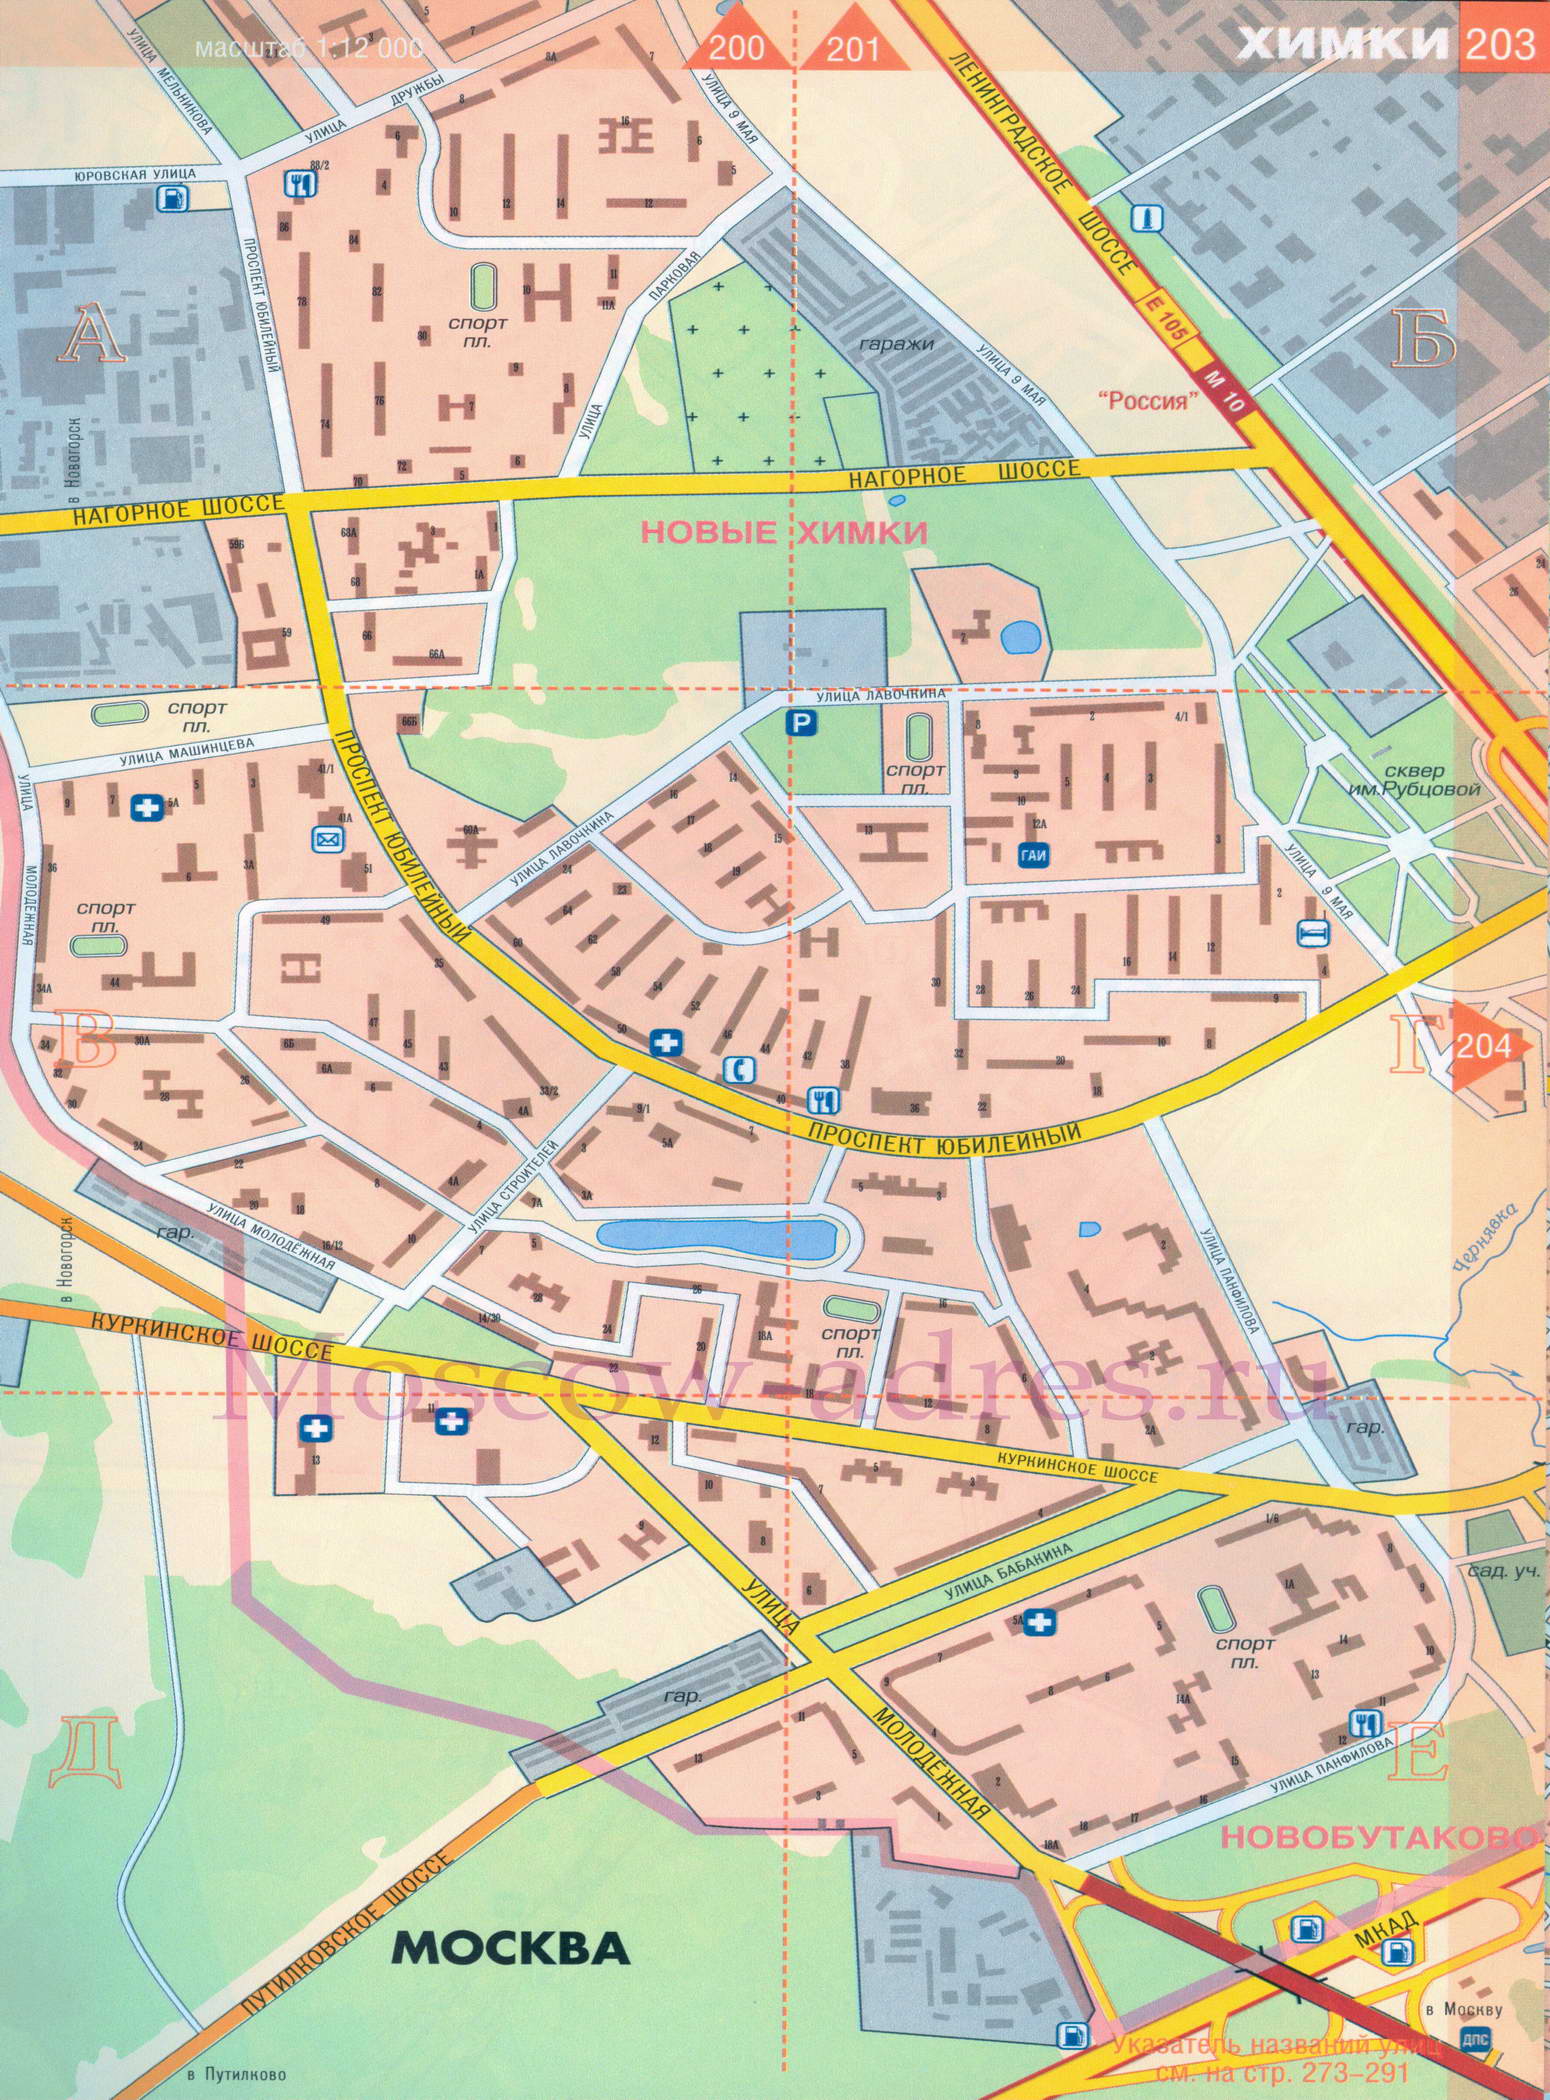 Город Химки Московской области на карте